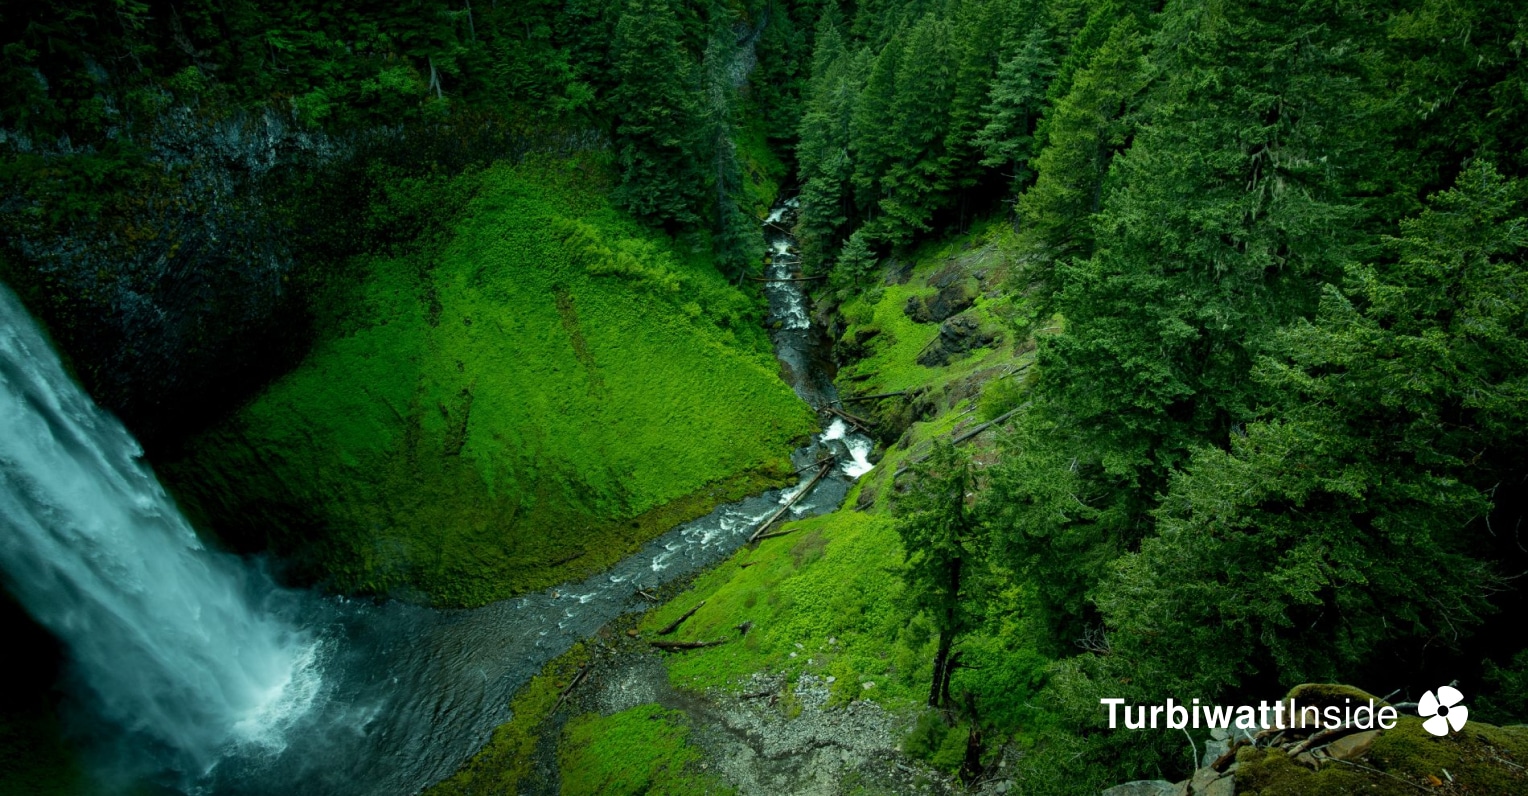 Choisir une turbine hydroélectrique pour sa rivière - Turbiwatt